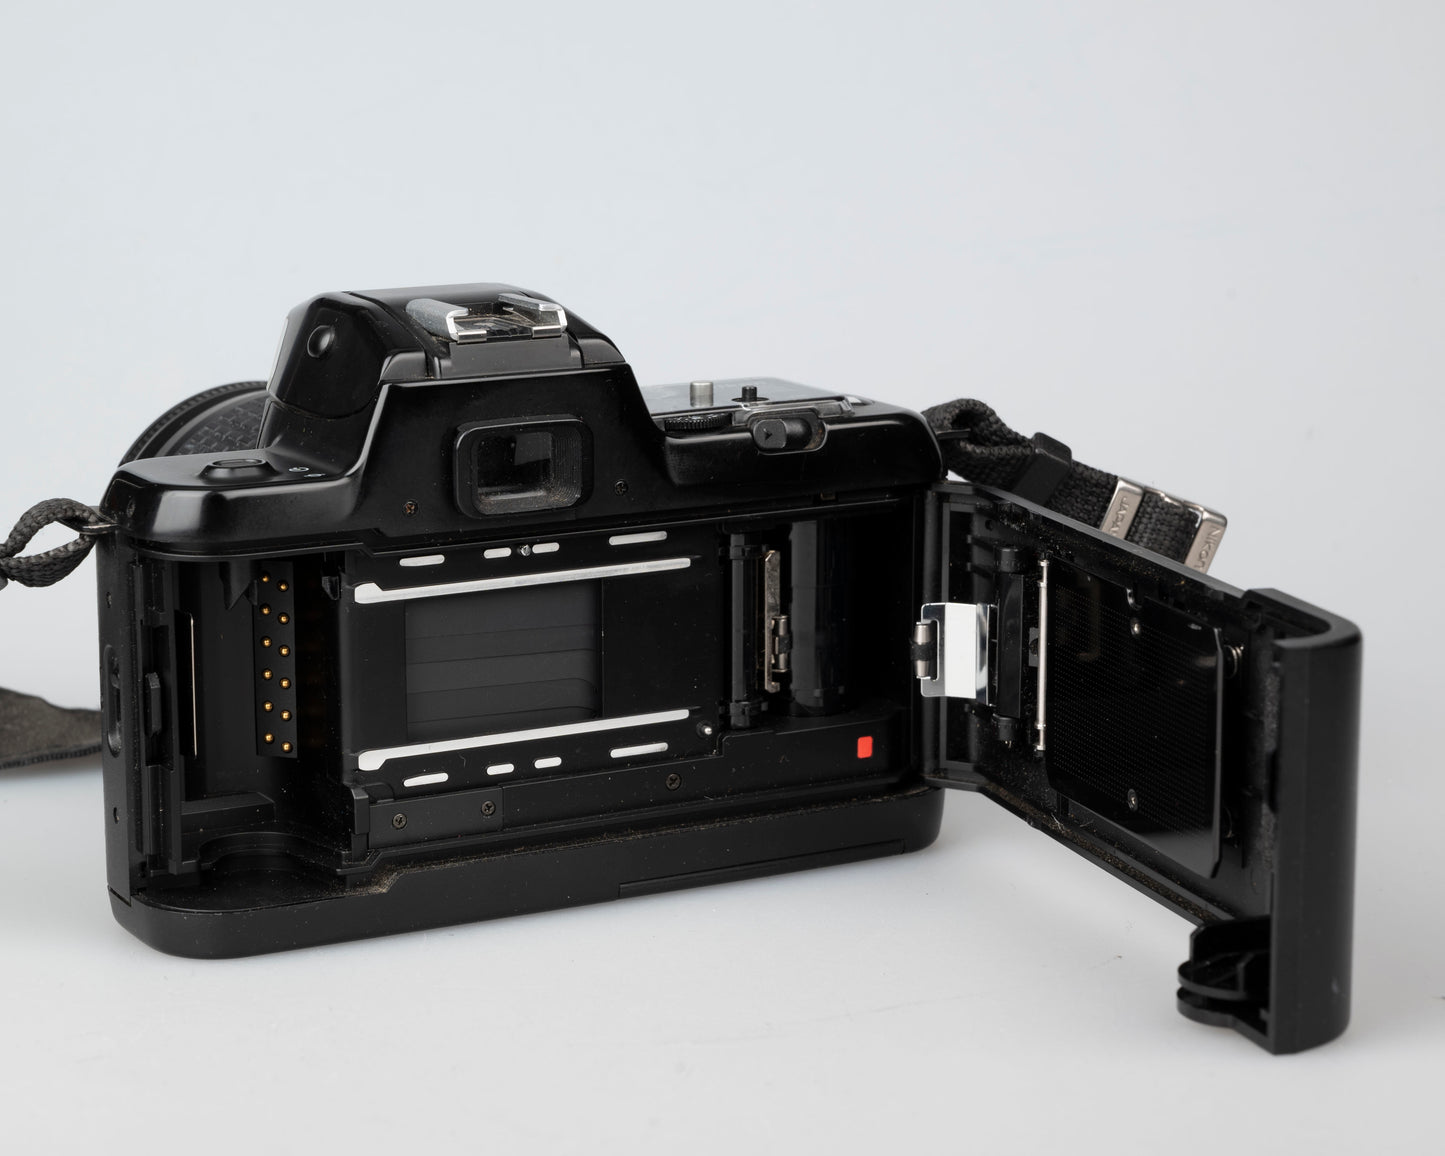 Nikon F-401S 35mm film SLR w/ AF Nikkor 28-80mm lens